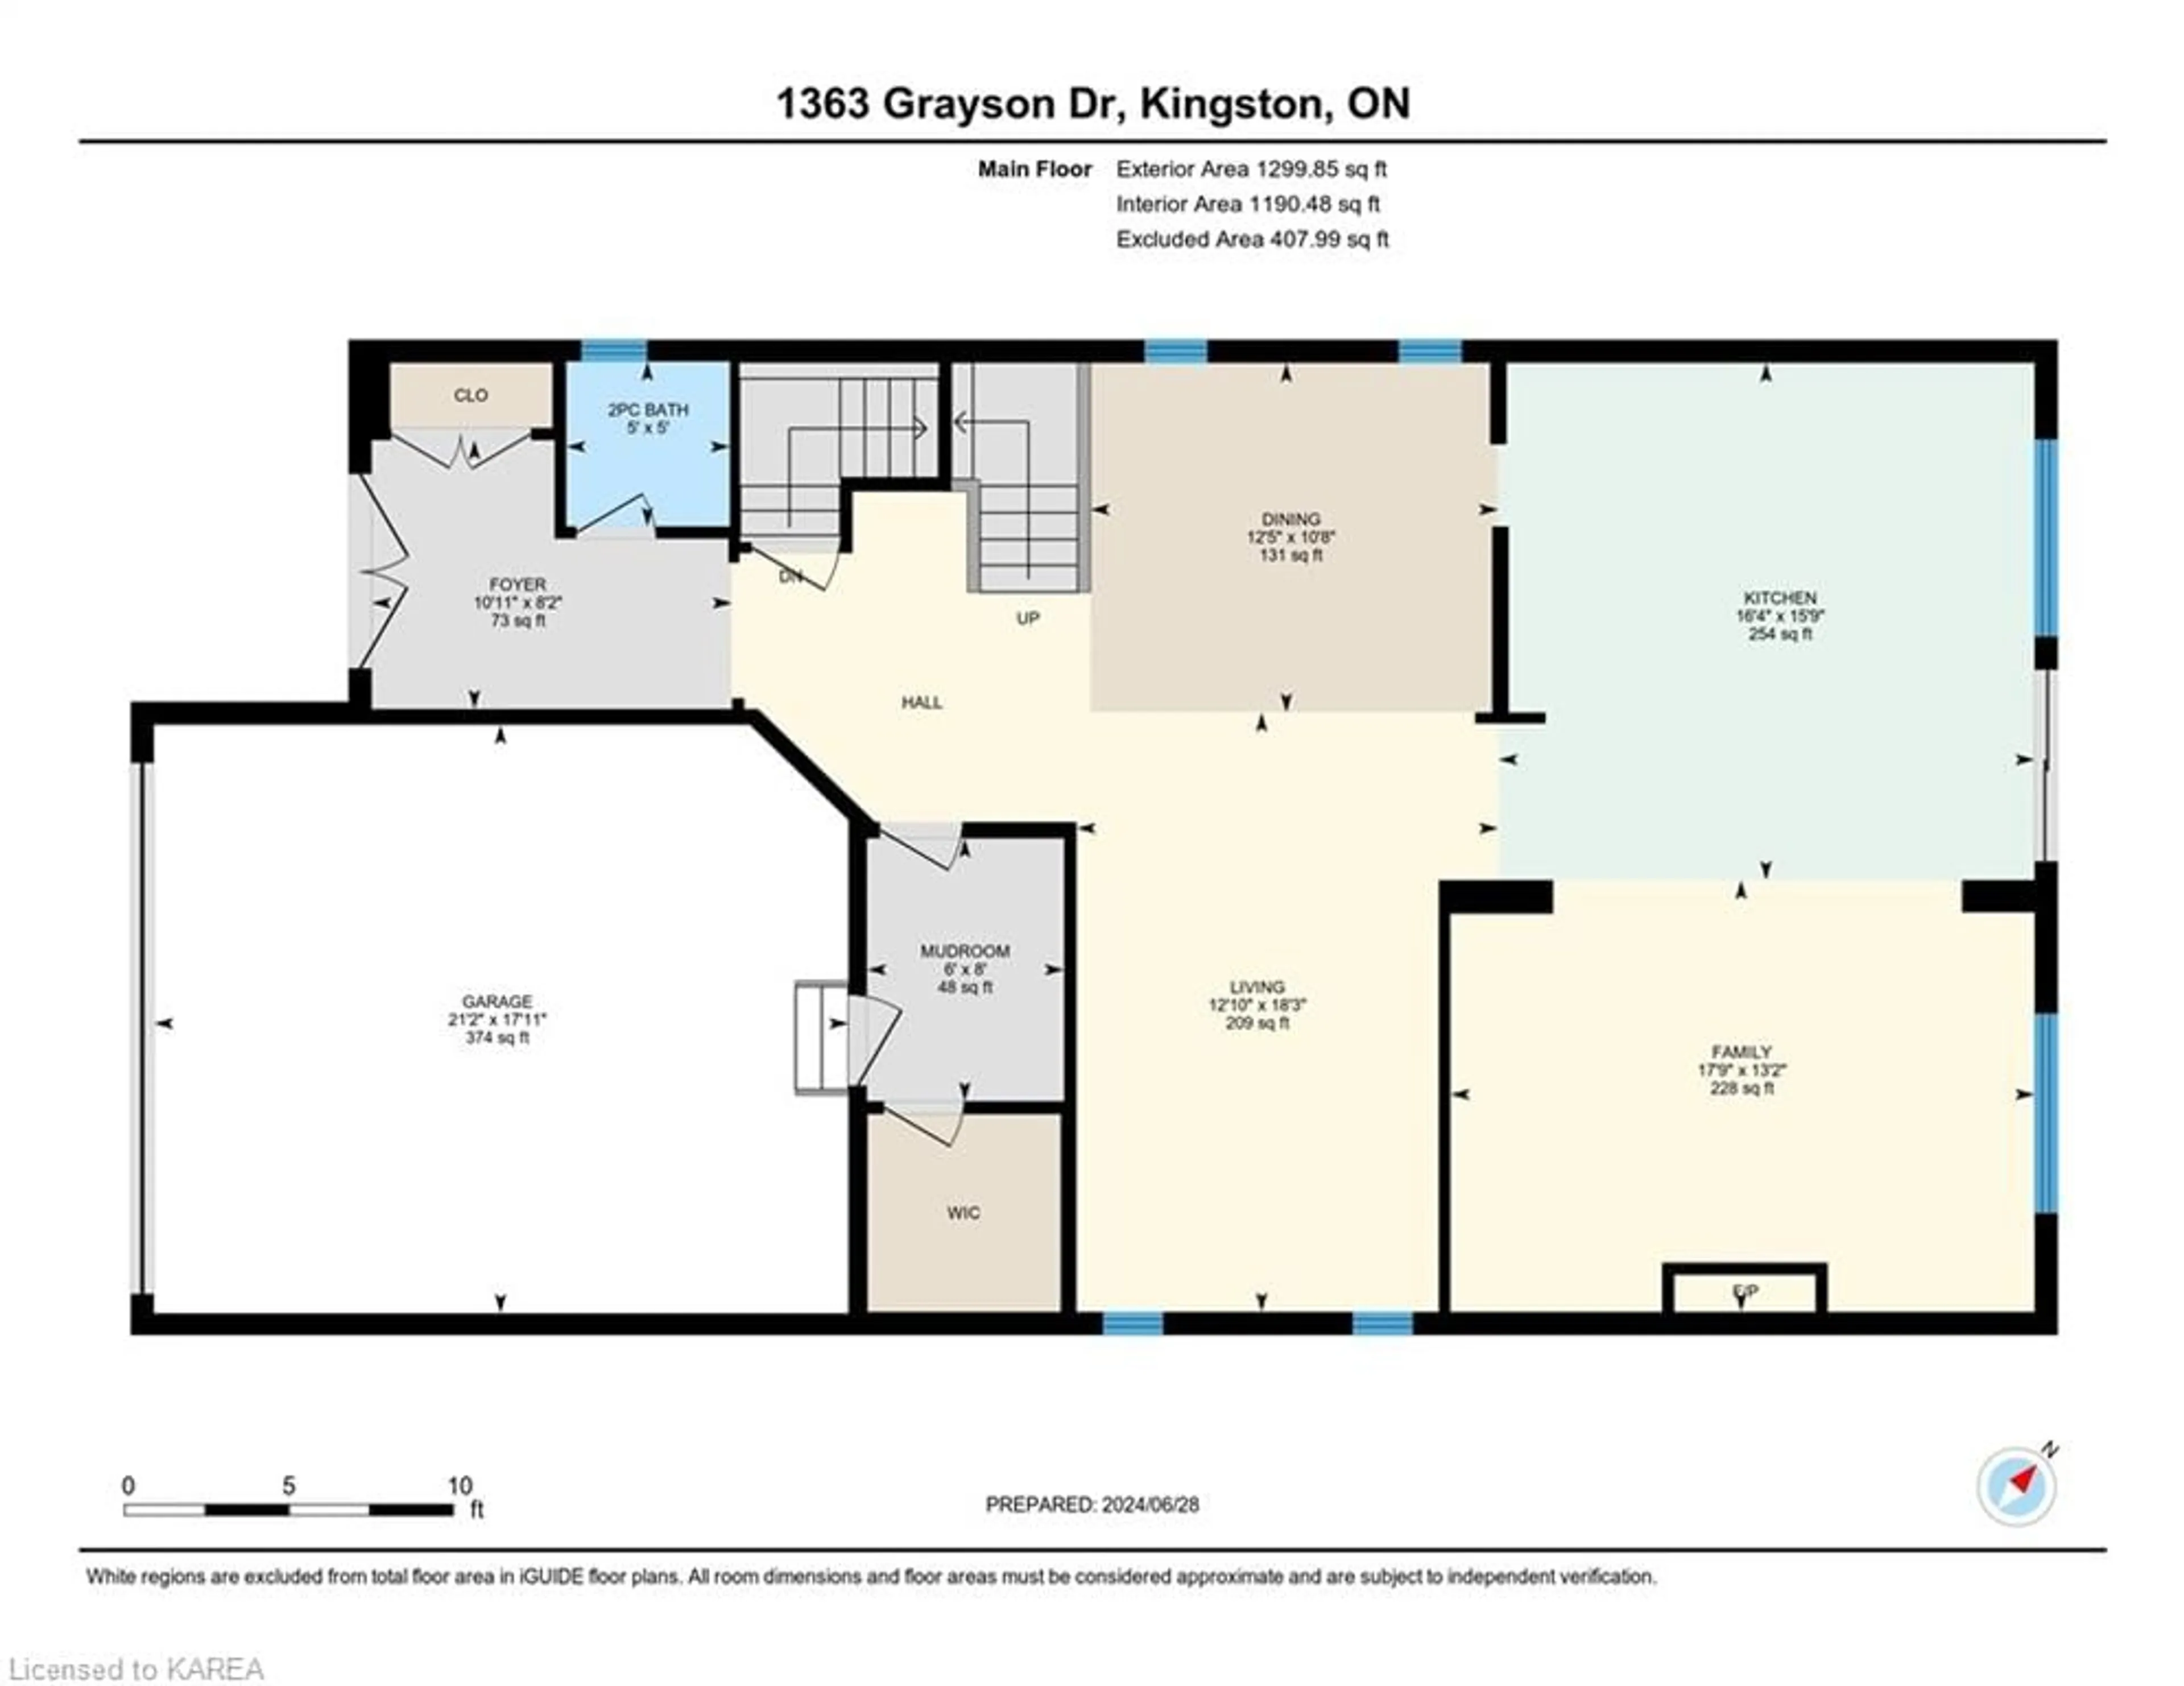 Floor plan for 1363 Grayson Dr, Kingston Ontario K7M 0H3